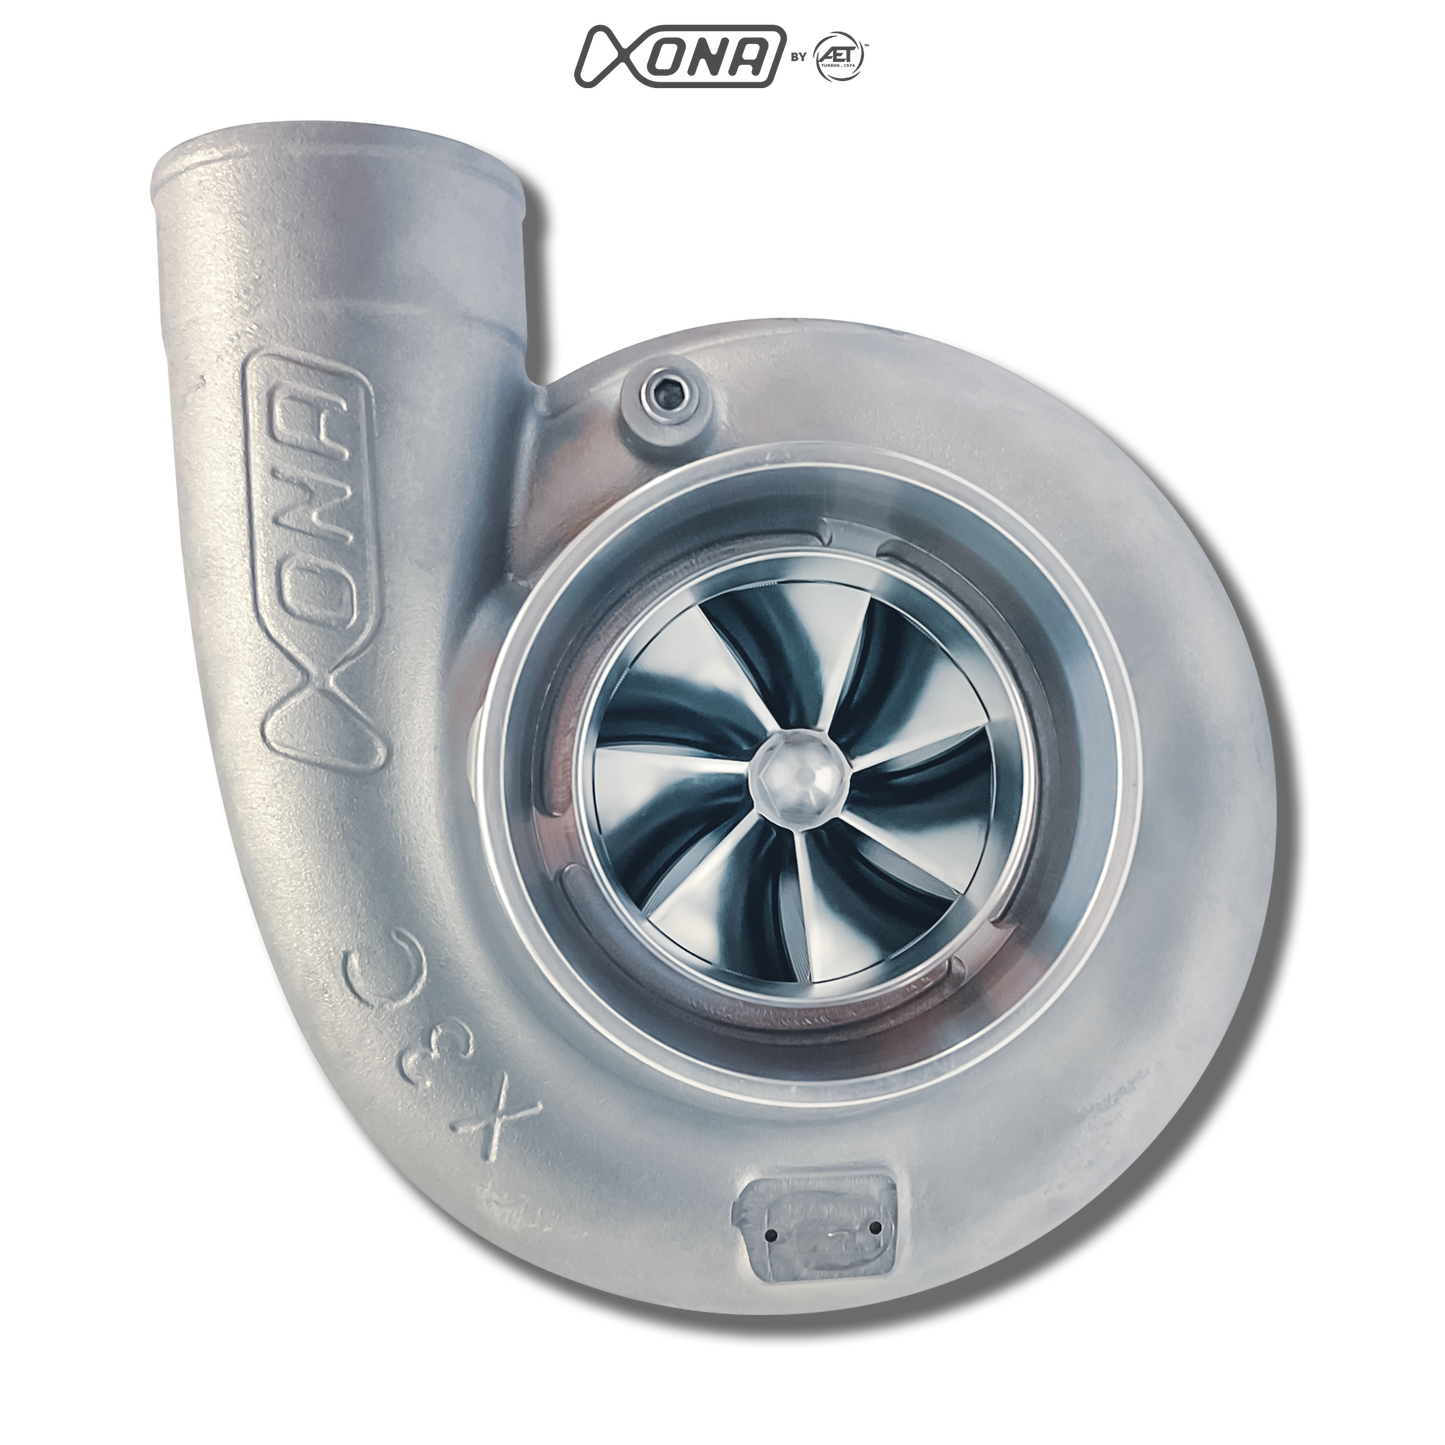 Xona Rotor X3C XR8268 | 430-860 bhp | Performance Turbo